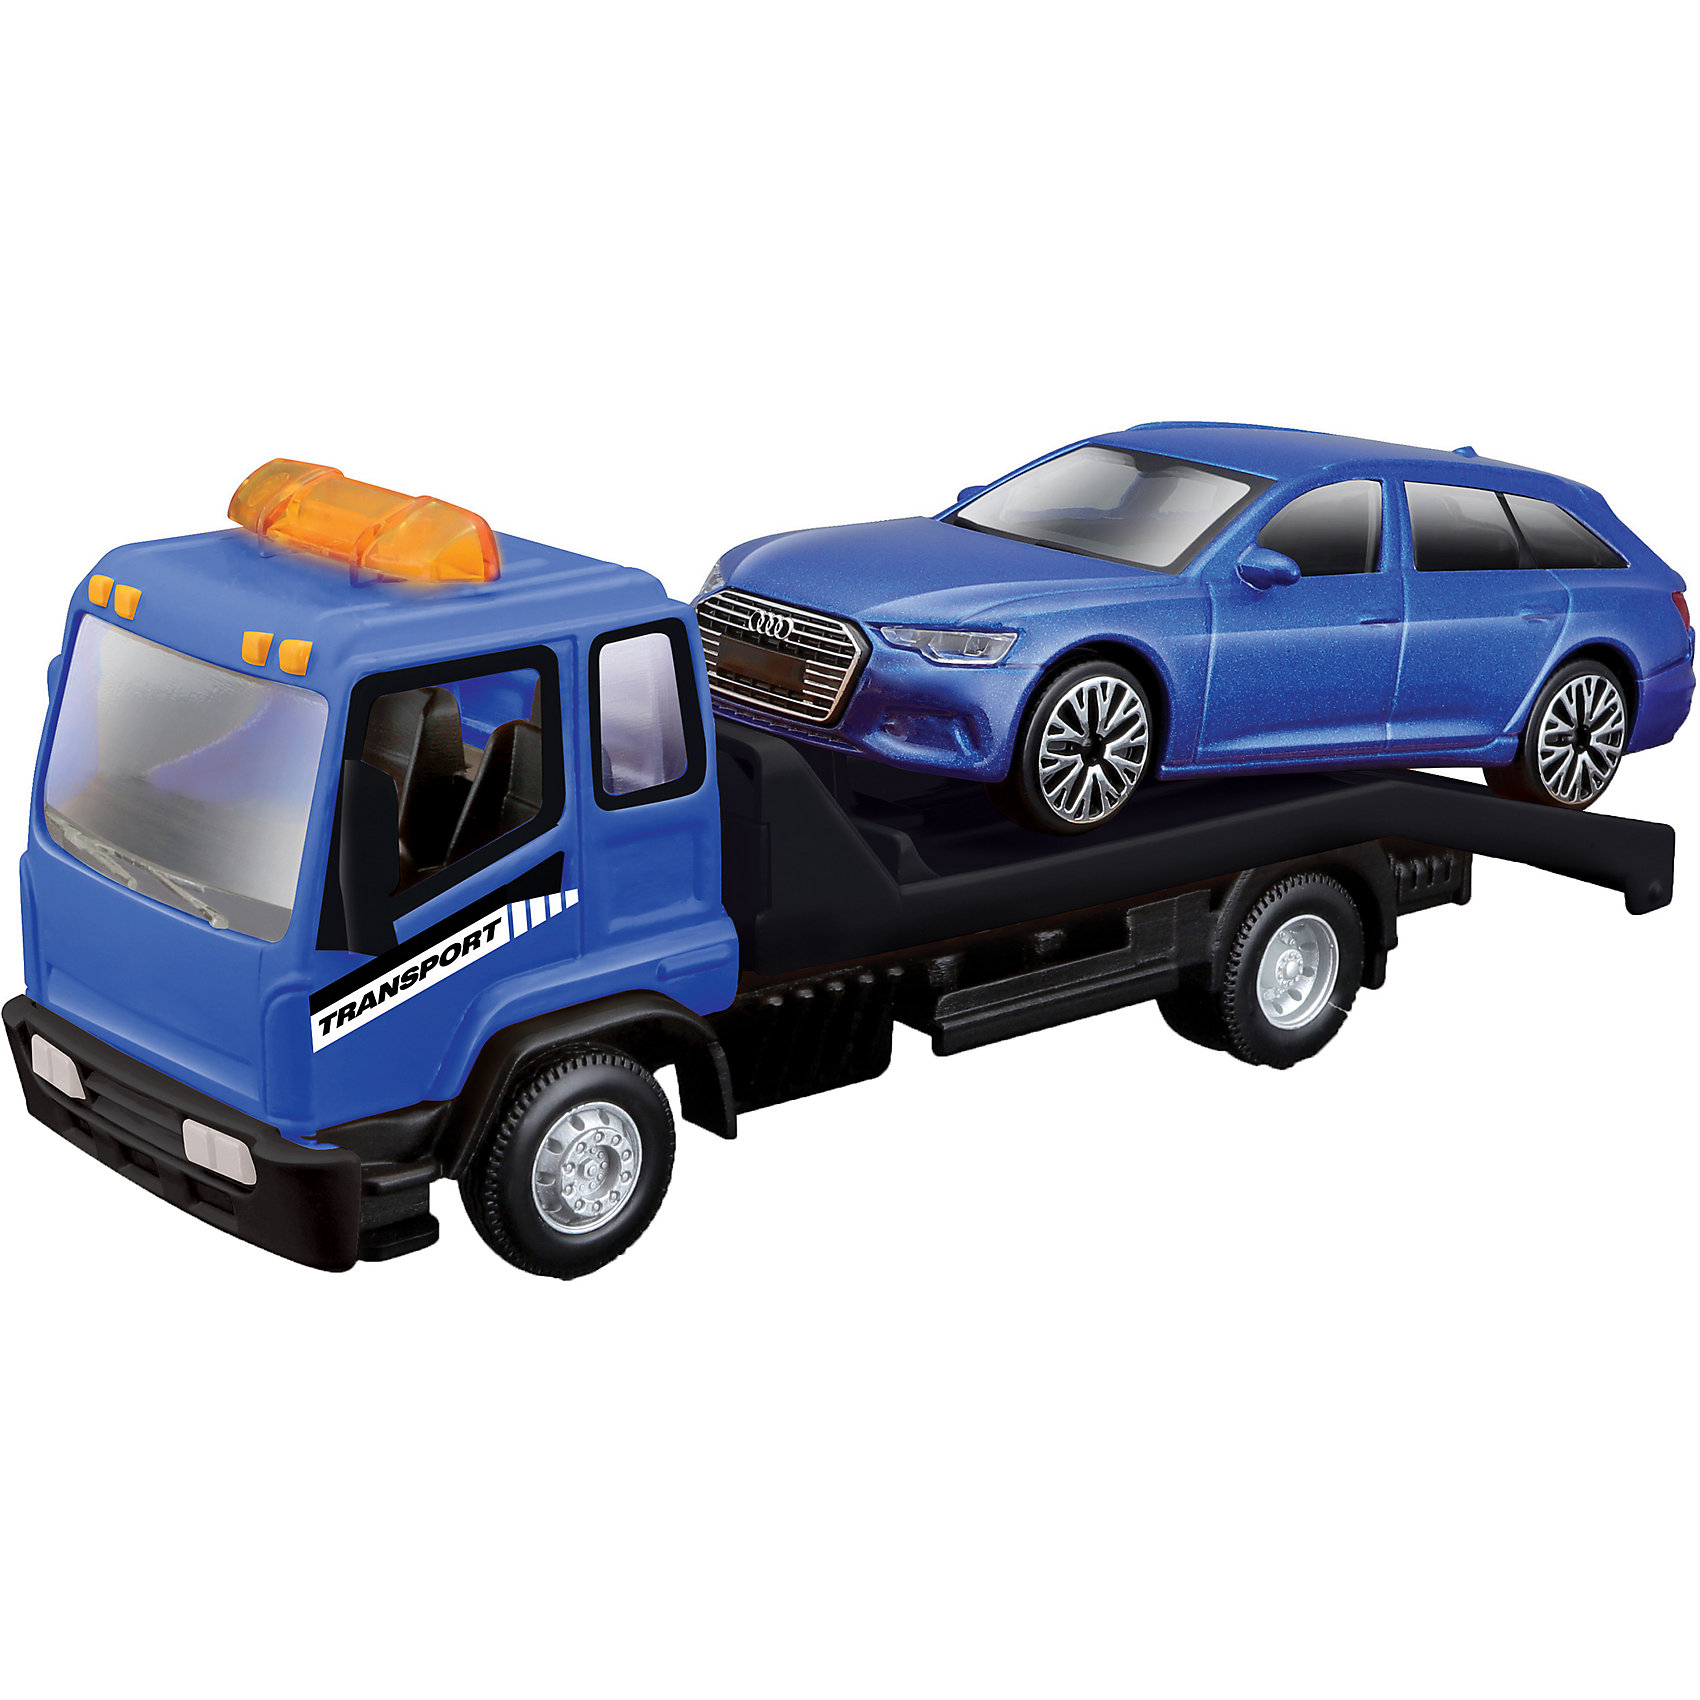 Коллекционная машинка-эвакуатор BBURAGO Street Fire Flatbed Tow Truckt, 1:43, синяя bburago коллекционная машинка 1 32 street fire mini cooper s cabriolet синяя